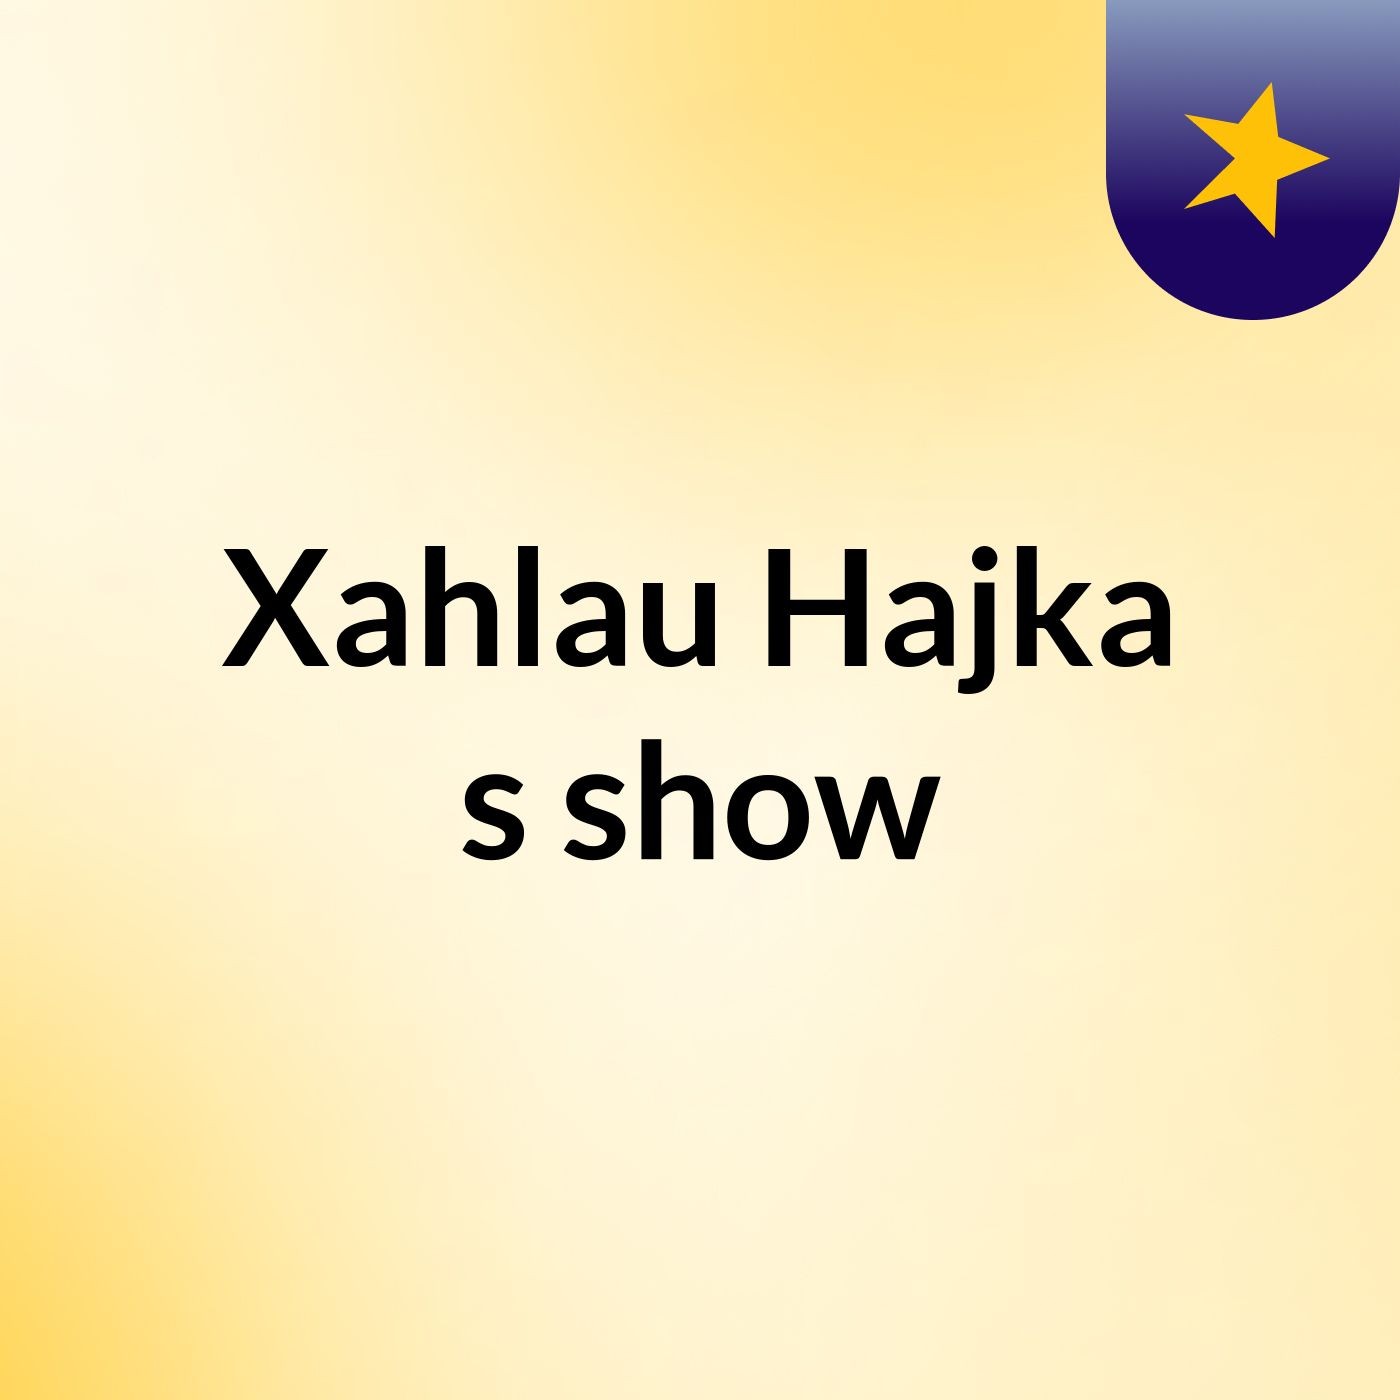 Xahlau Hajka's show